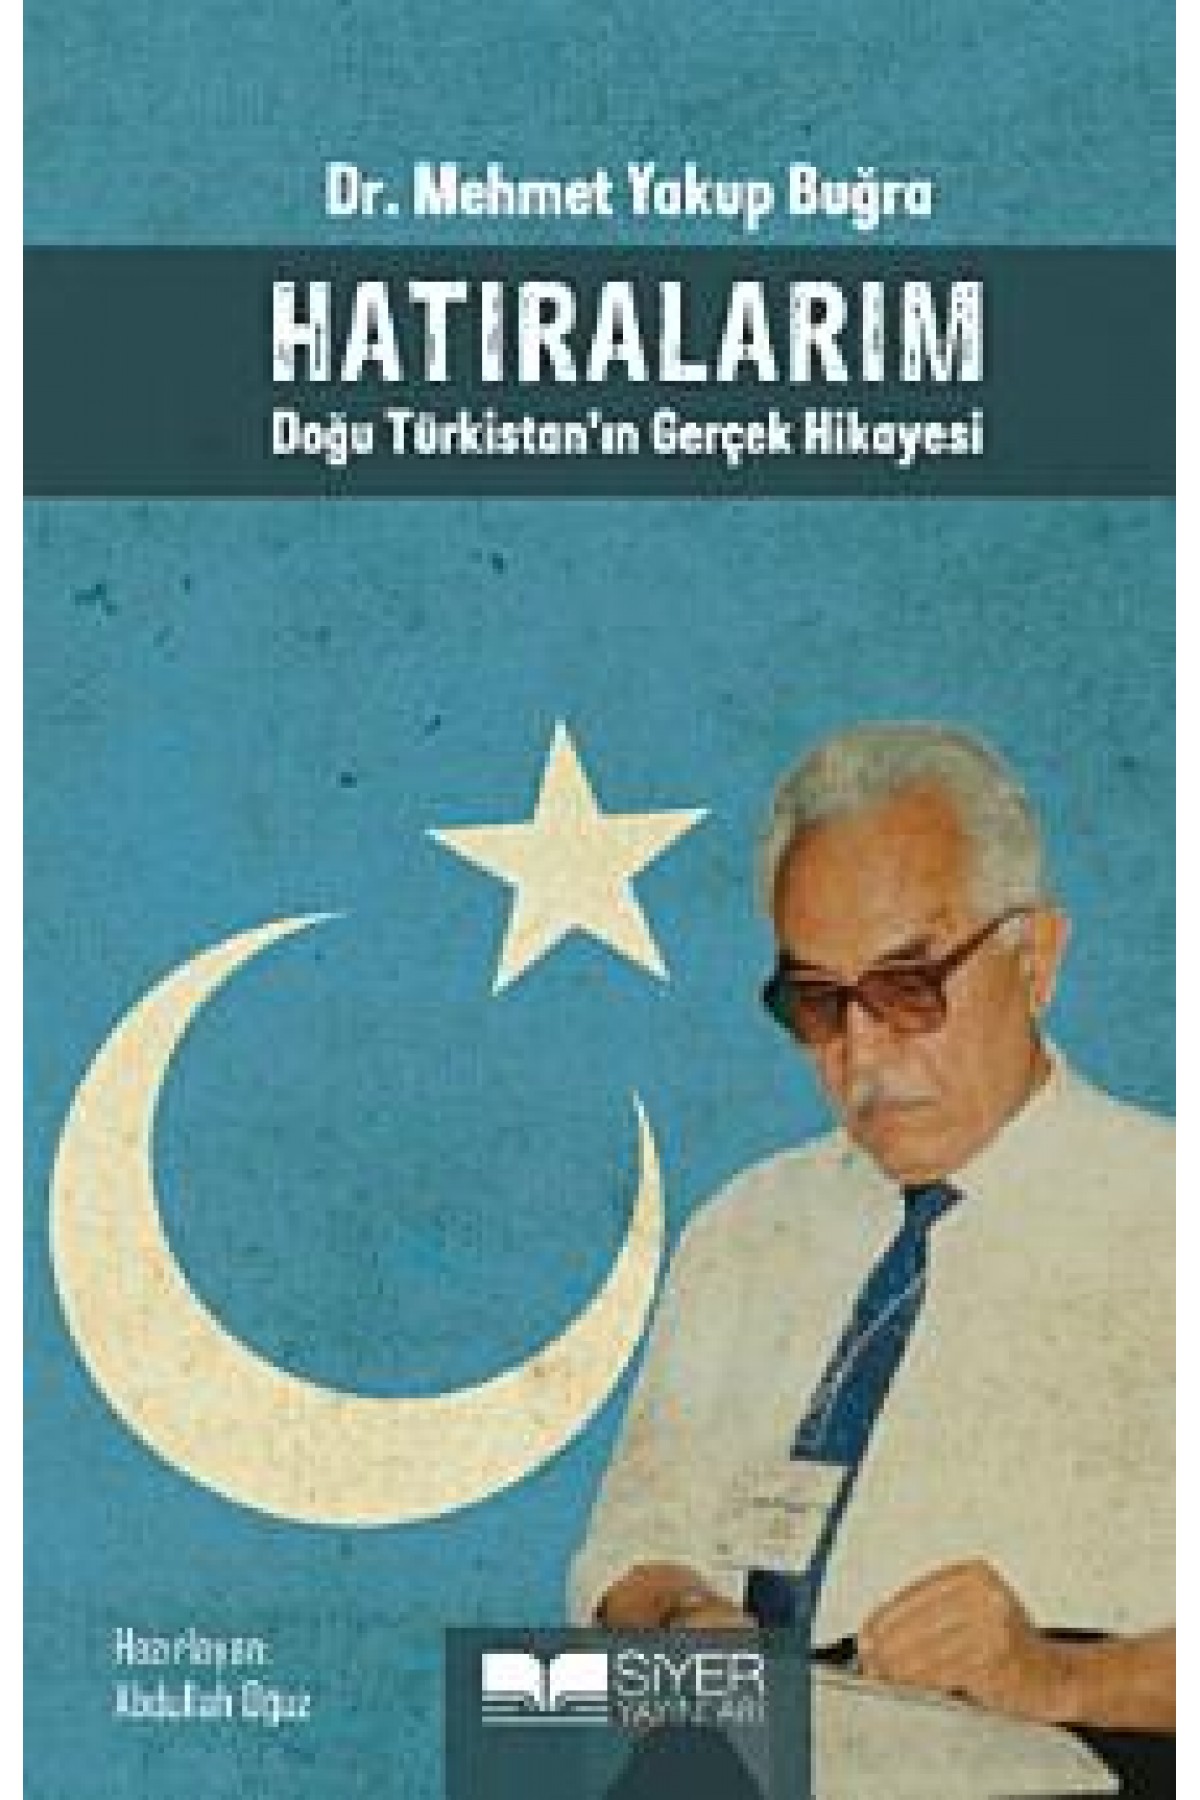 HATIRALARIM-Doğu Türkistan’ın Gerçek Hikayesi